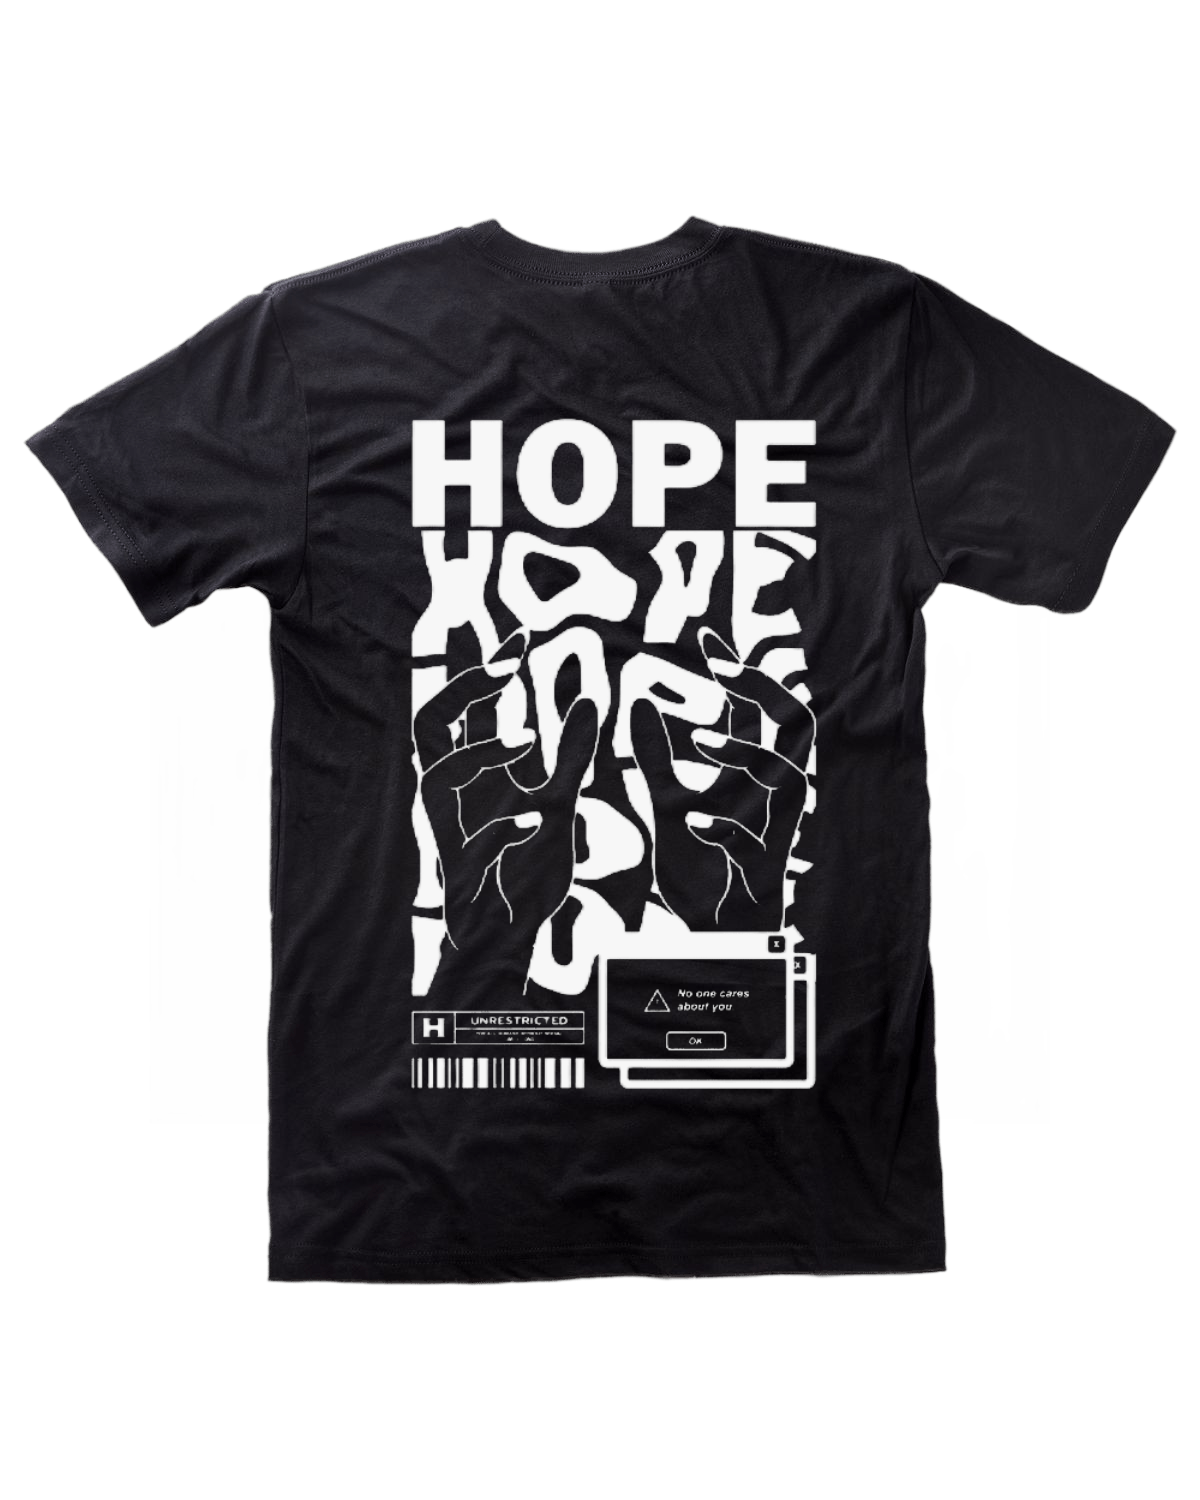 ‘Hope' tee (Clr)